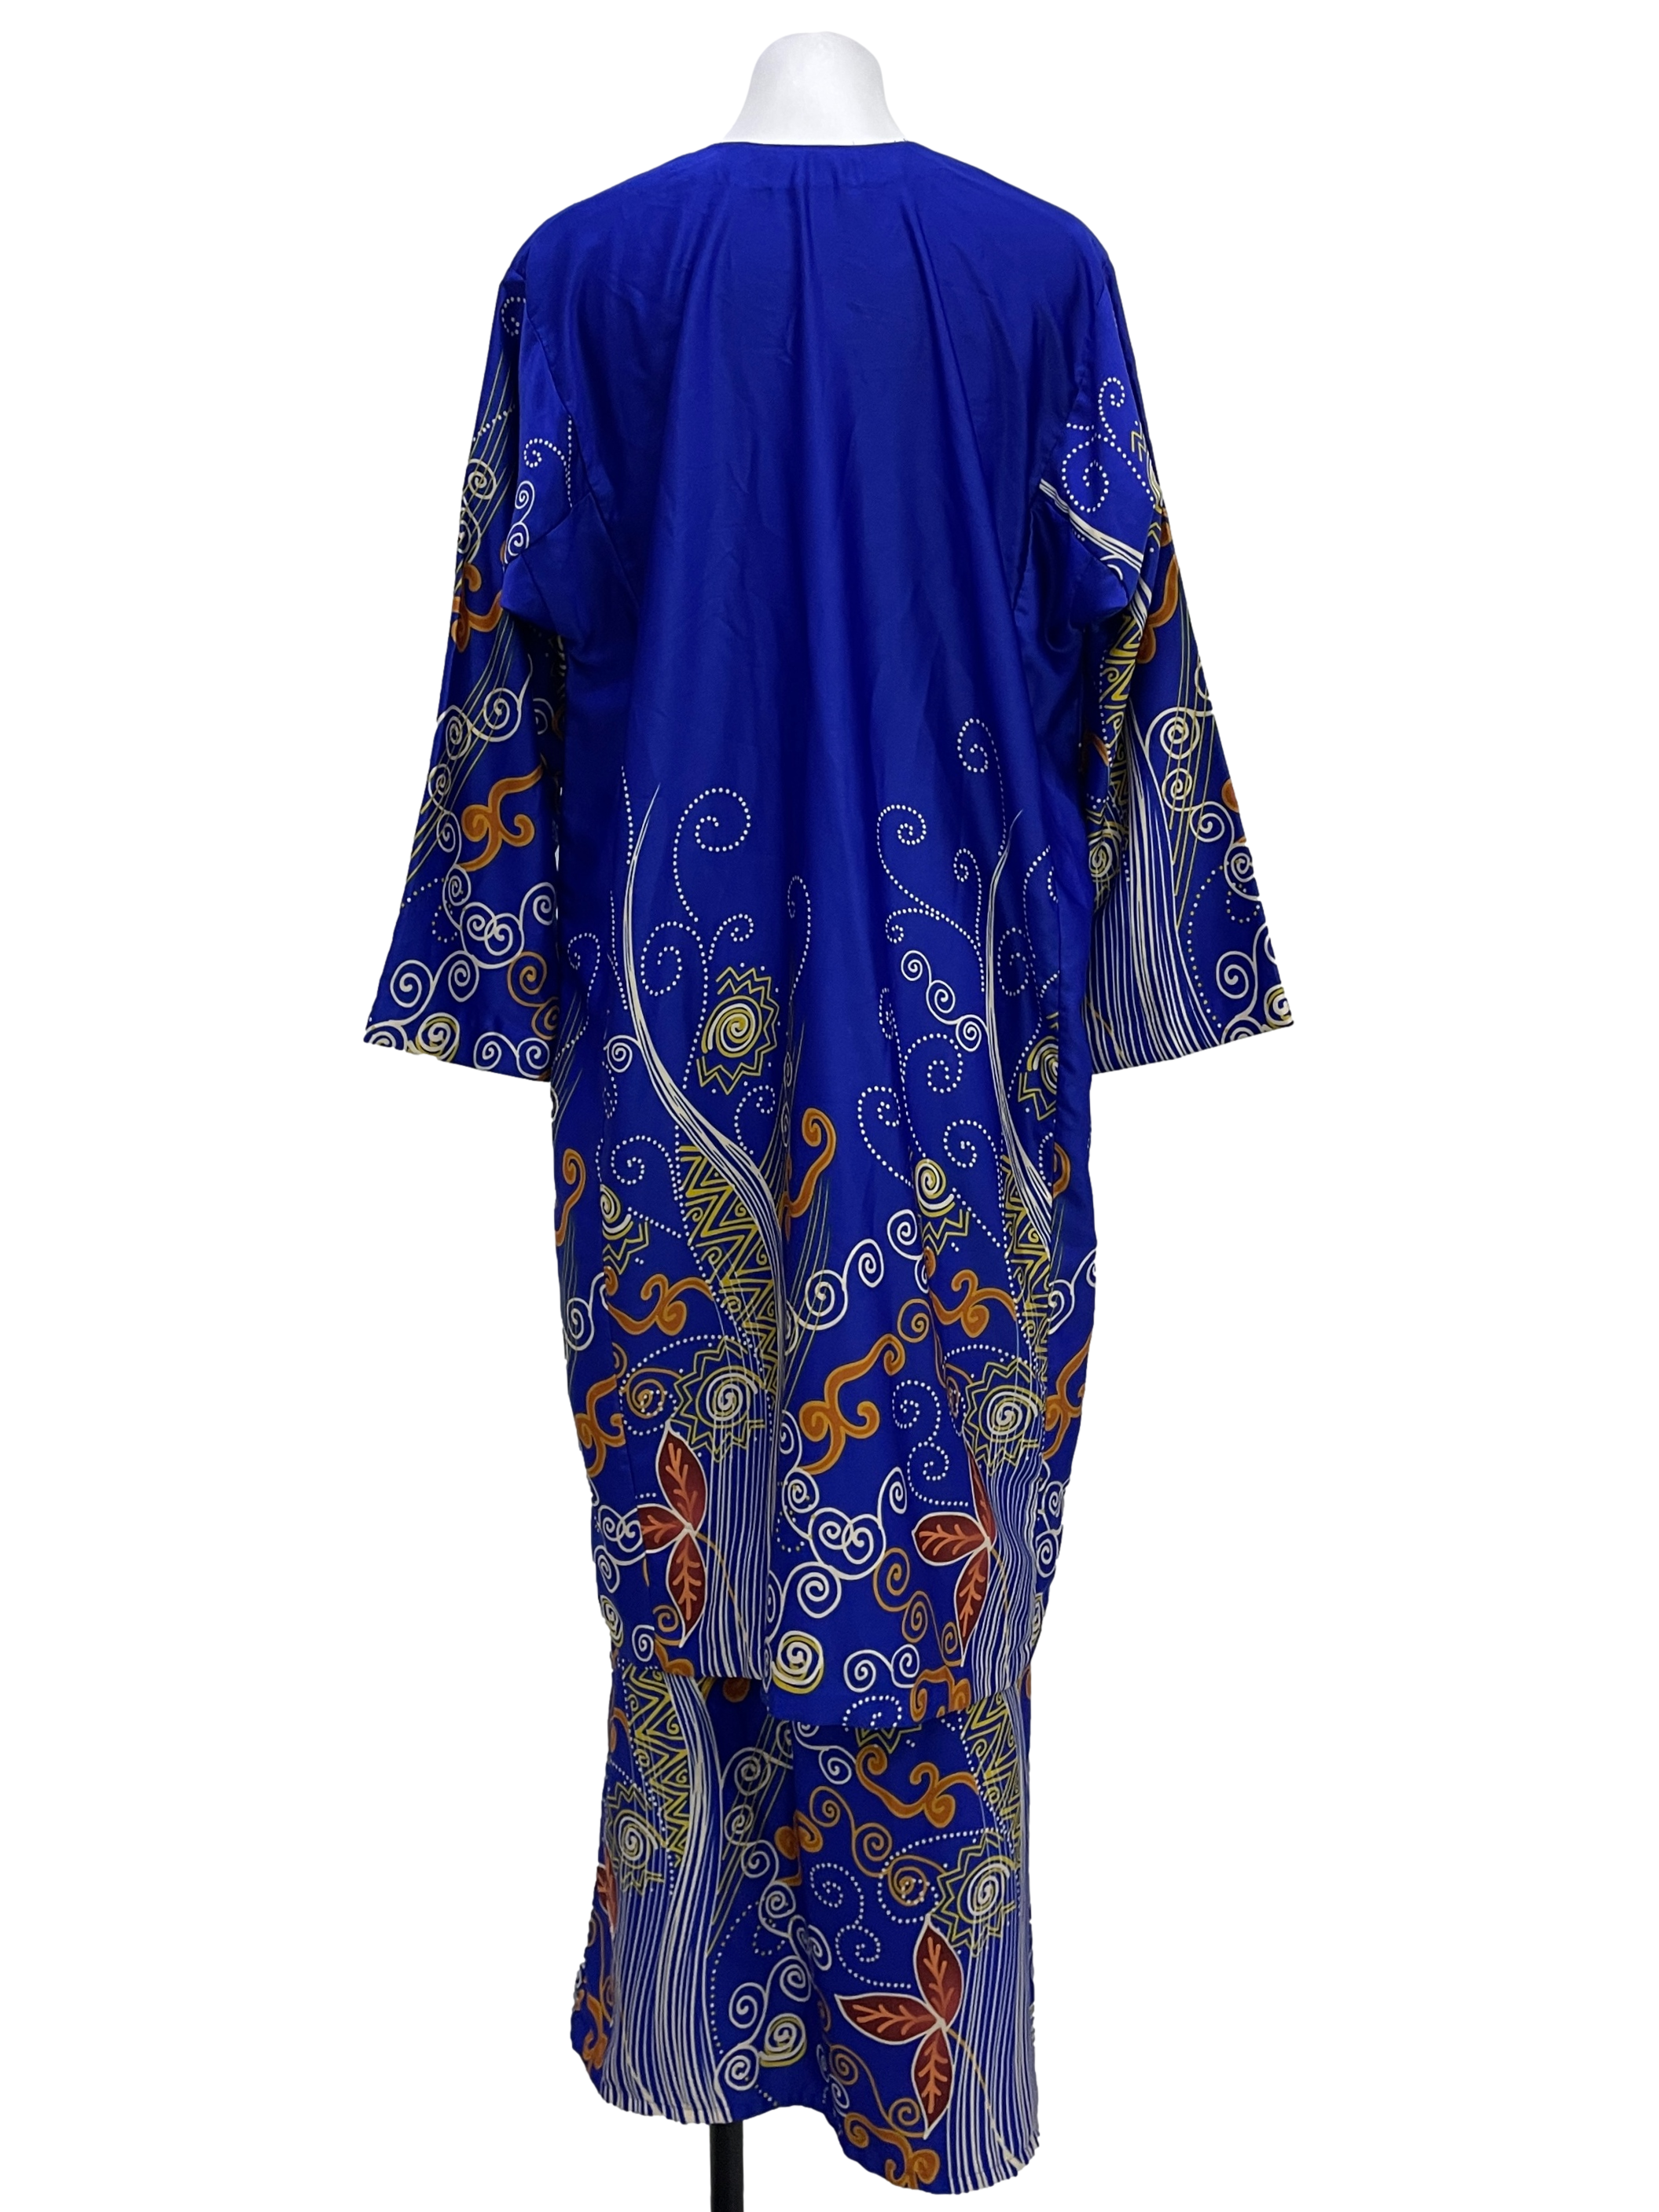 Admiral Blue Printed Abstract Baju Kurung Set